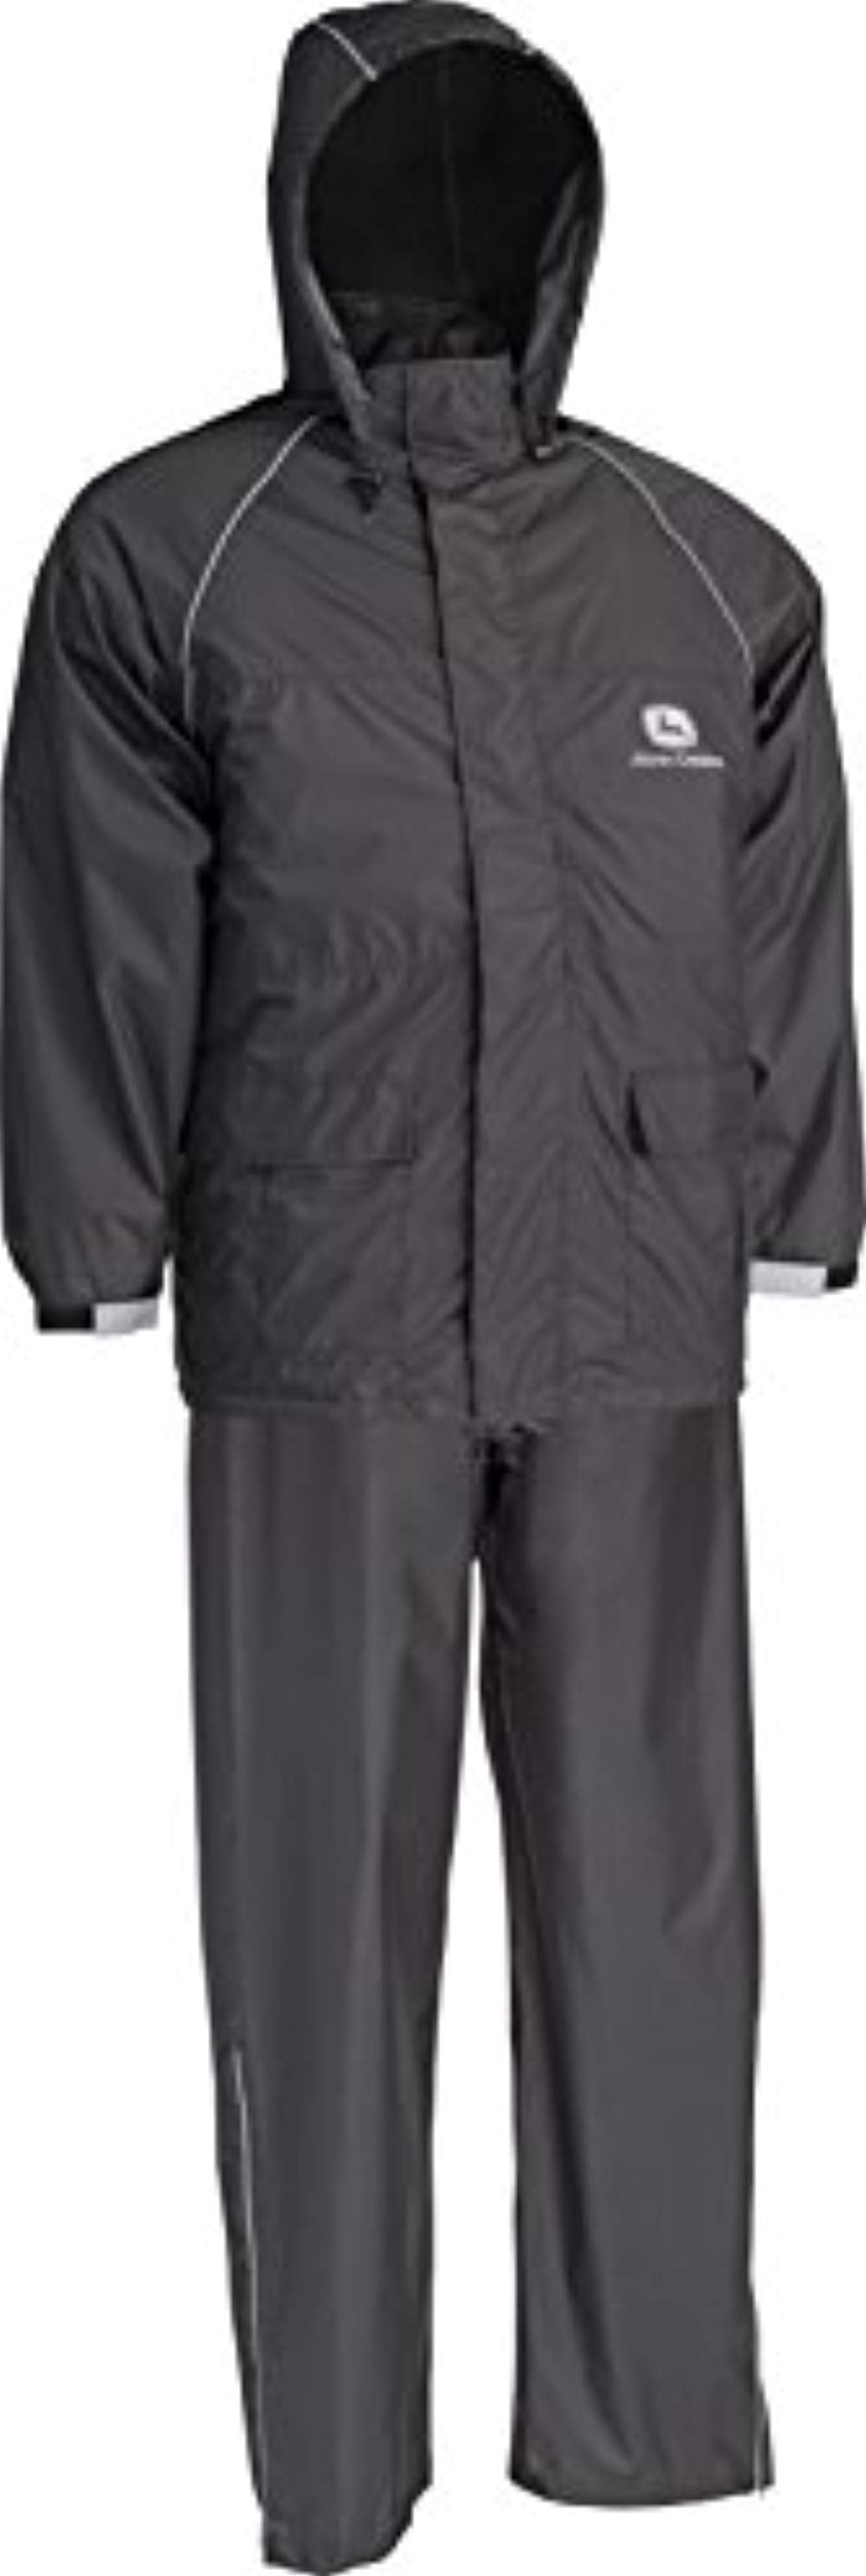 John Deere - West Chester John Deere JD44520 Lightweight Rain Suit 3 ...